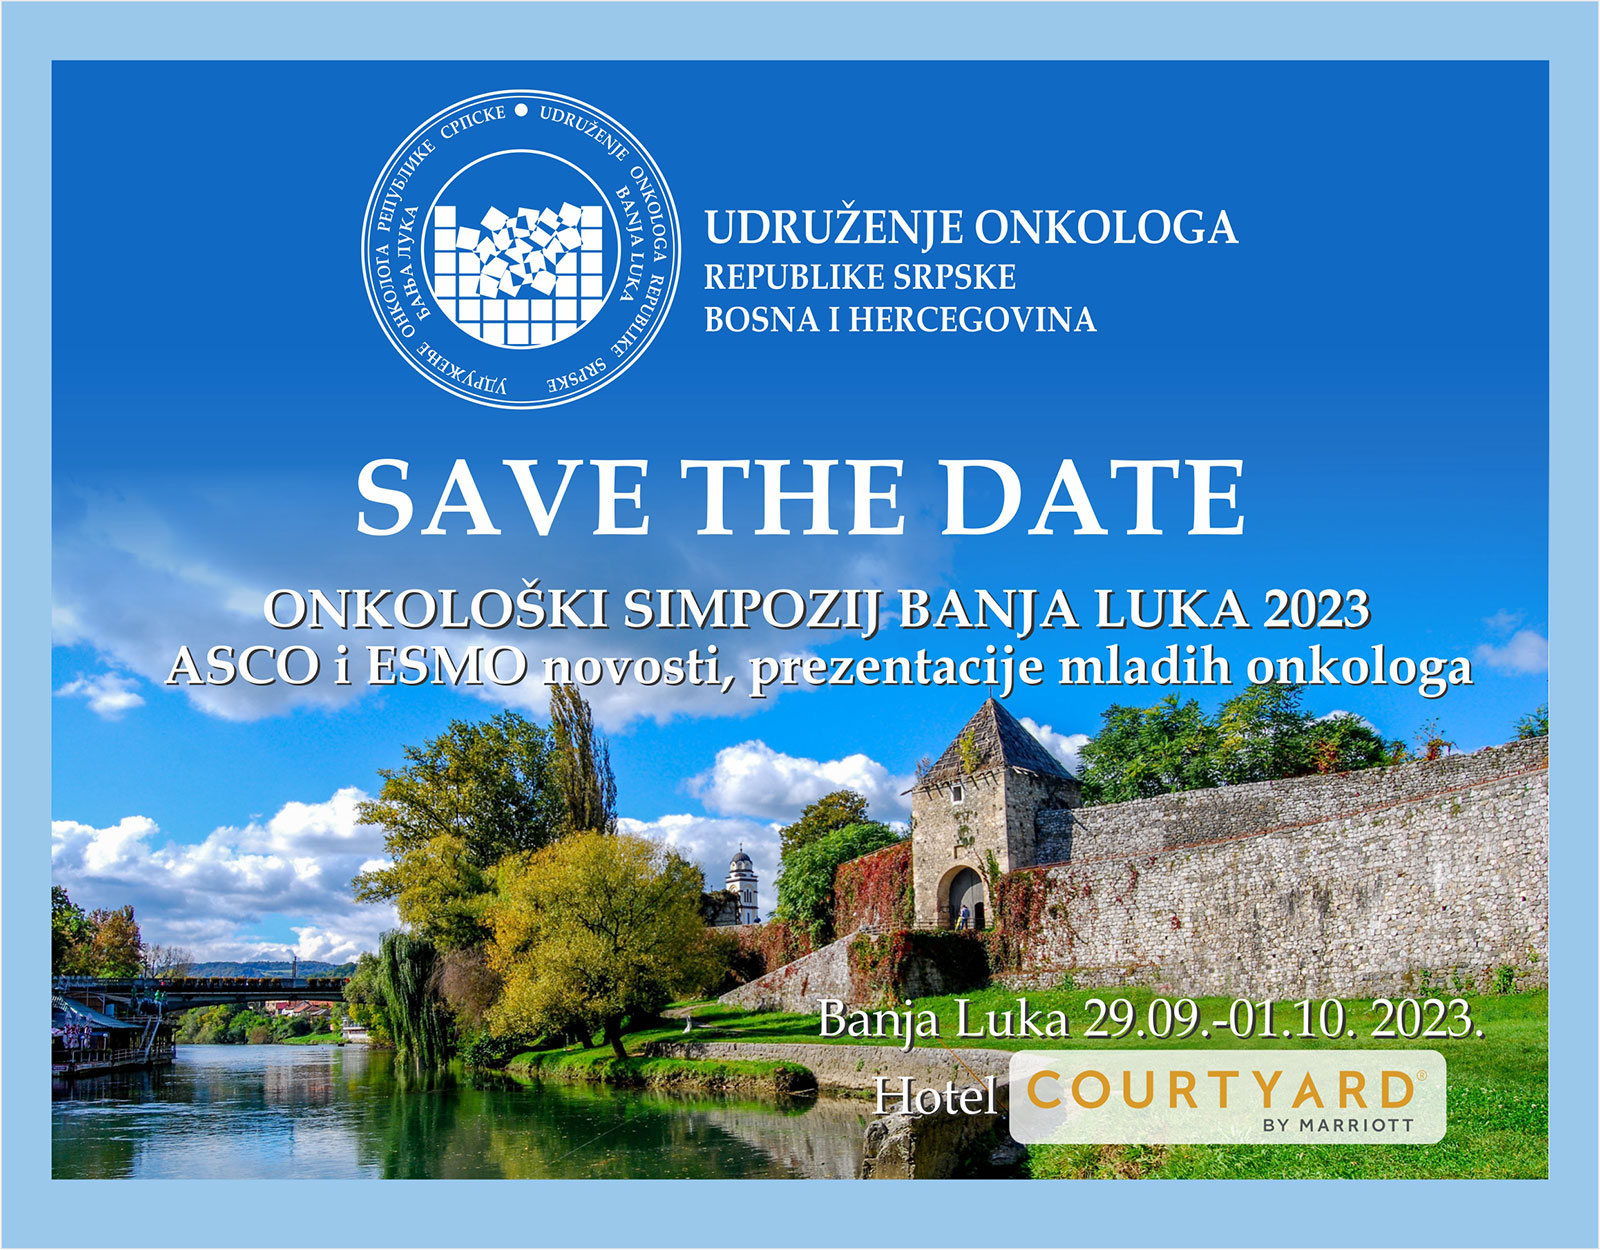 Onkološki simpozij "Save the Date" - Banja Luka 2023.